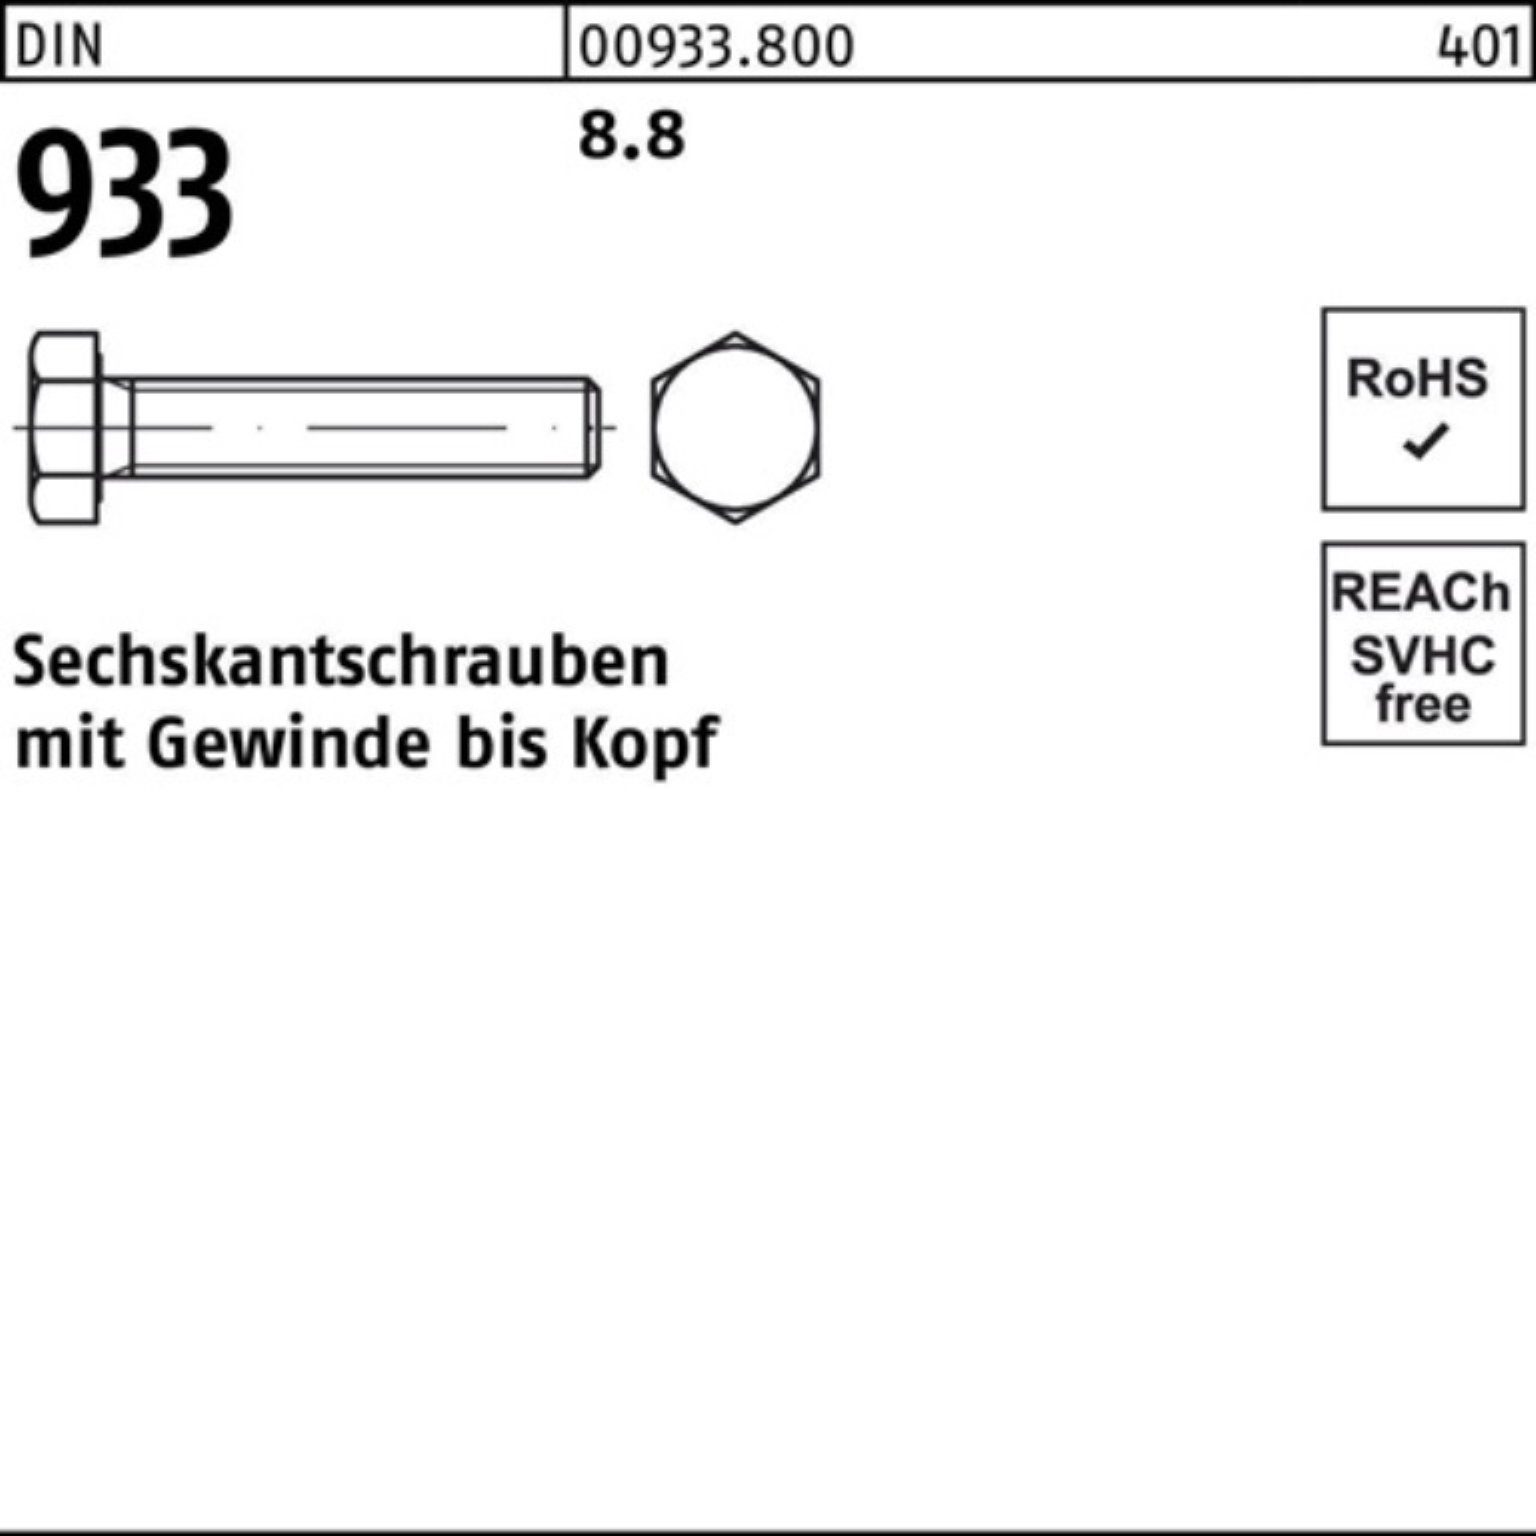 M6x Reyher Sechskantschraube VG 200er Sechskantschraube Stück 933 Pack 200 8.8 933 DIN 45 DIN